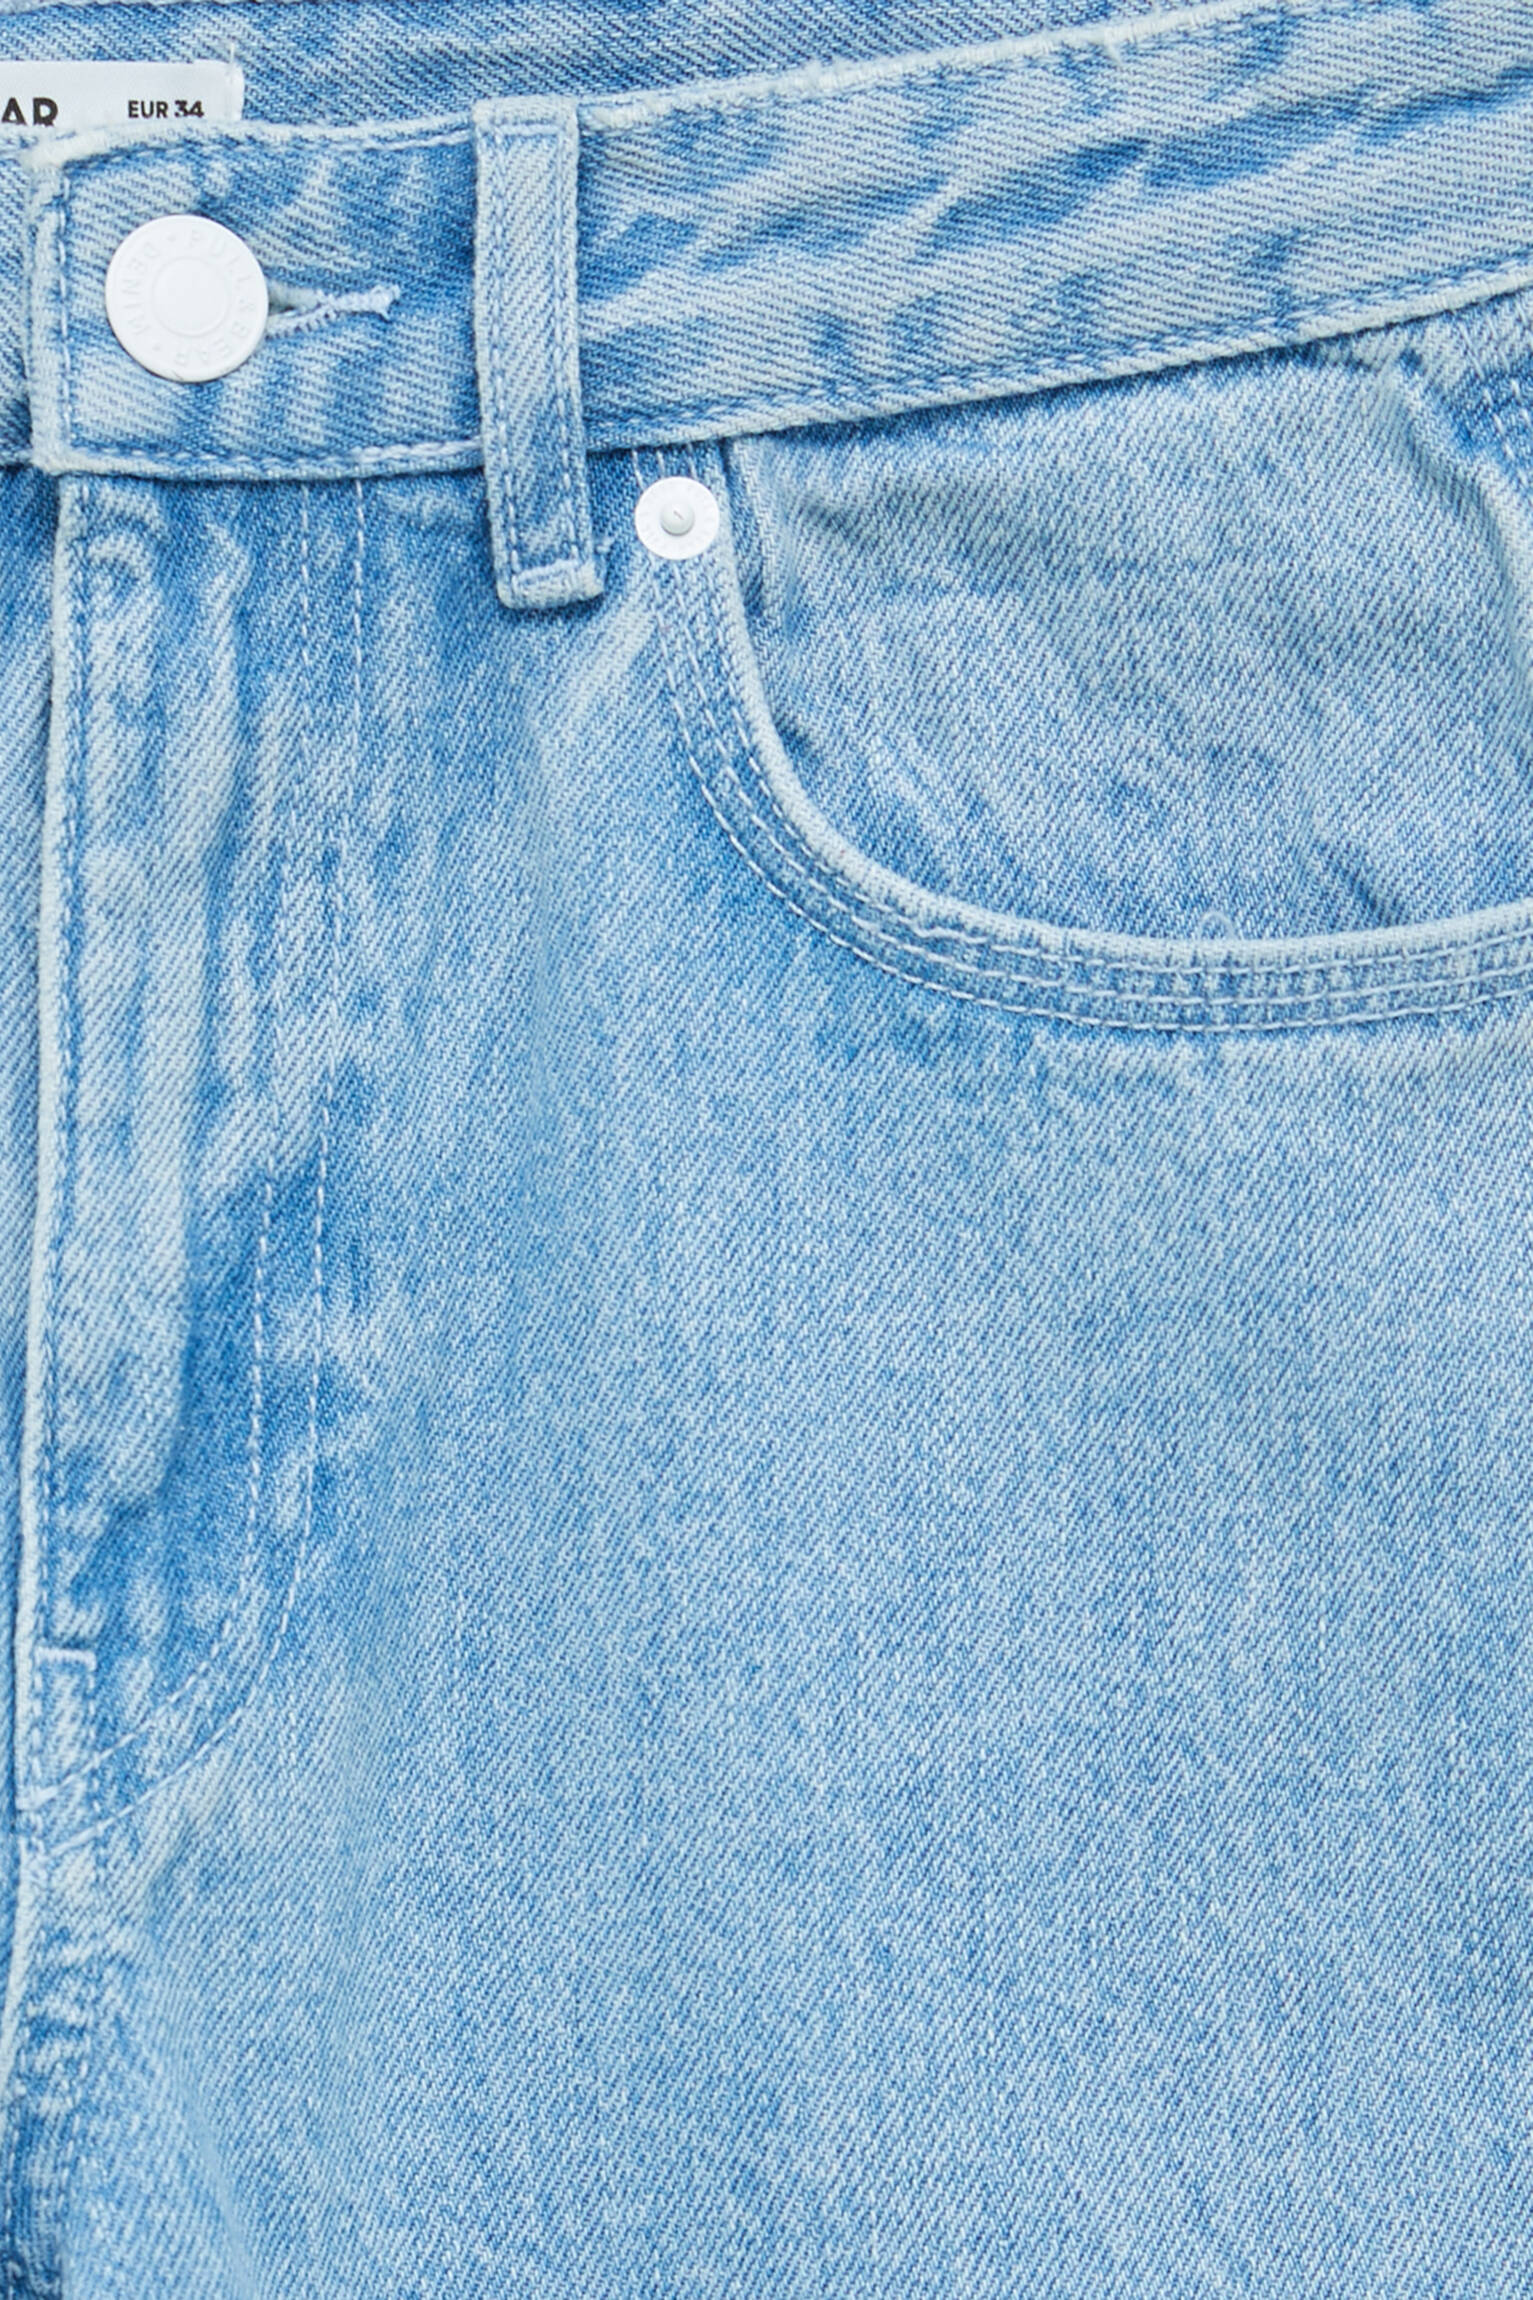 Modalite.net - Pull & Bear - High-waist wide-leg jeans